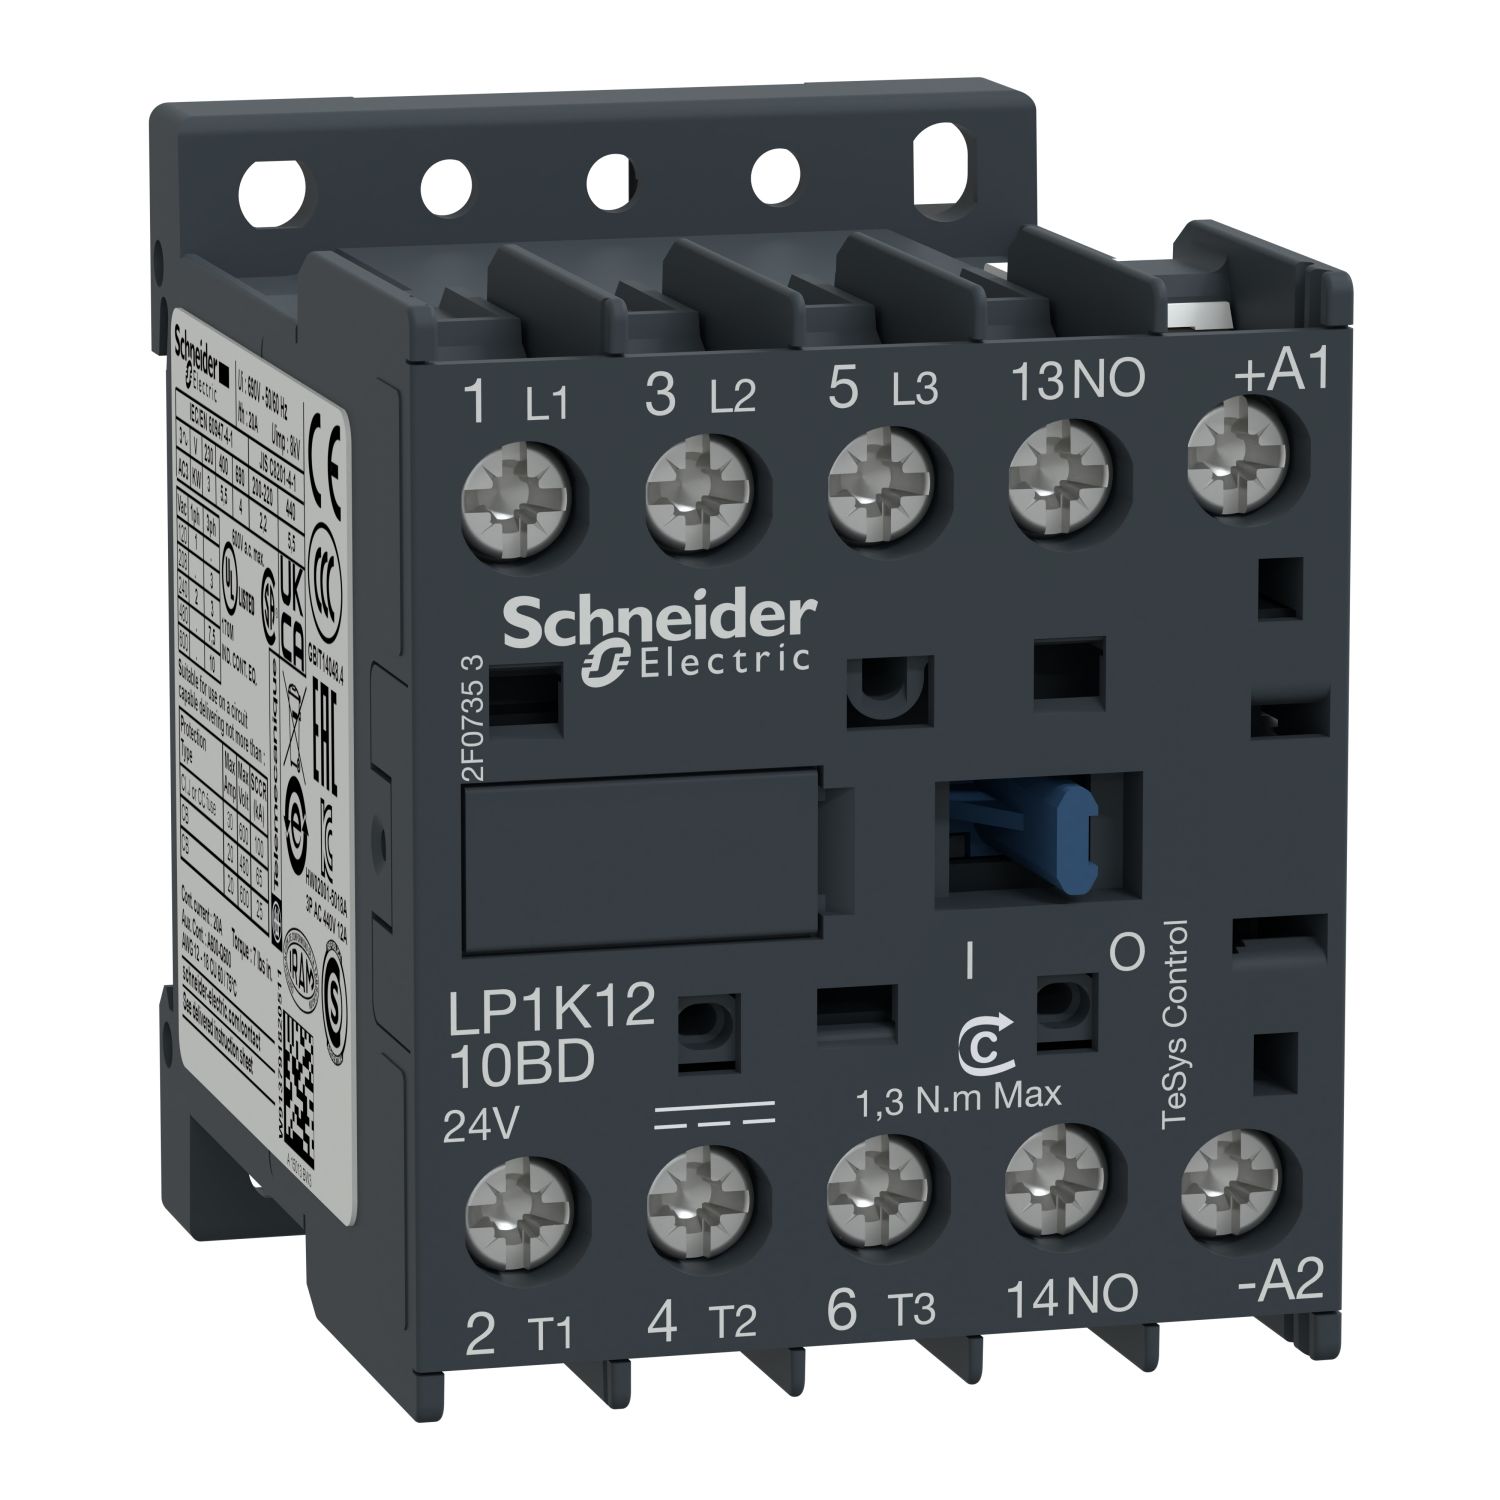 Schneider Electric LP1K1210BD 12A 24V DC Kontaktör